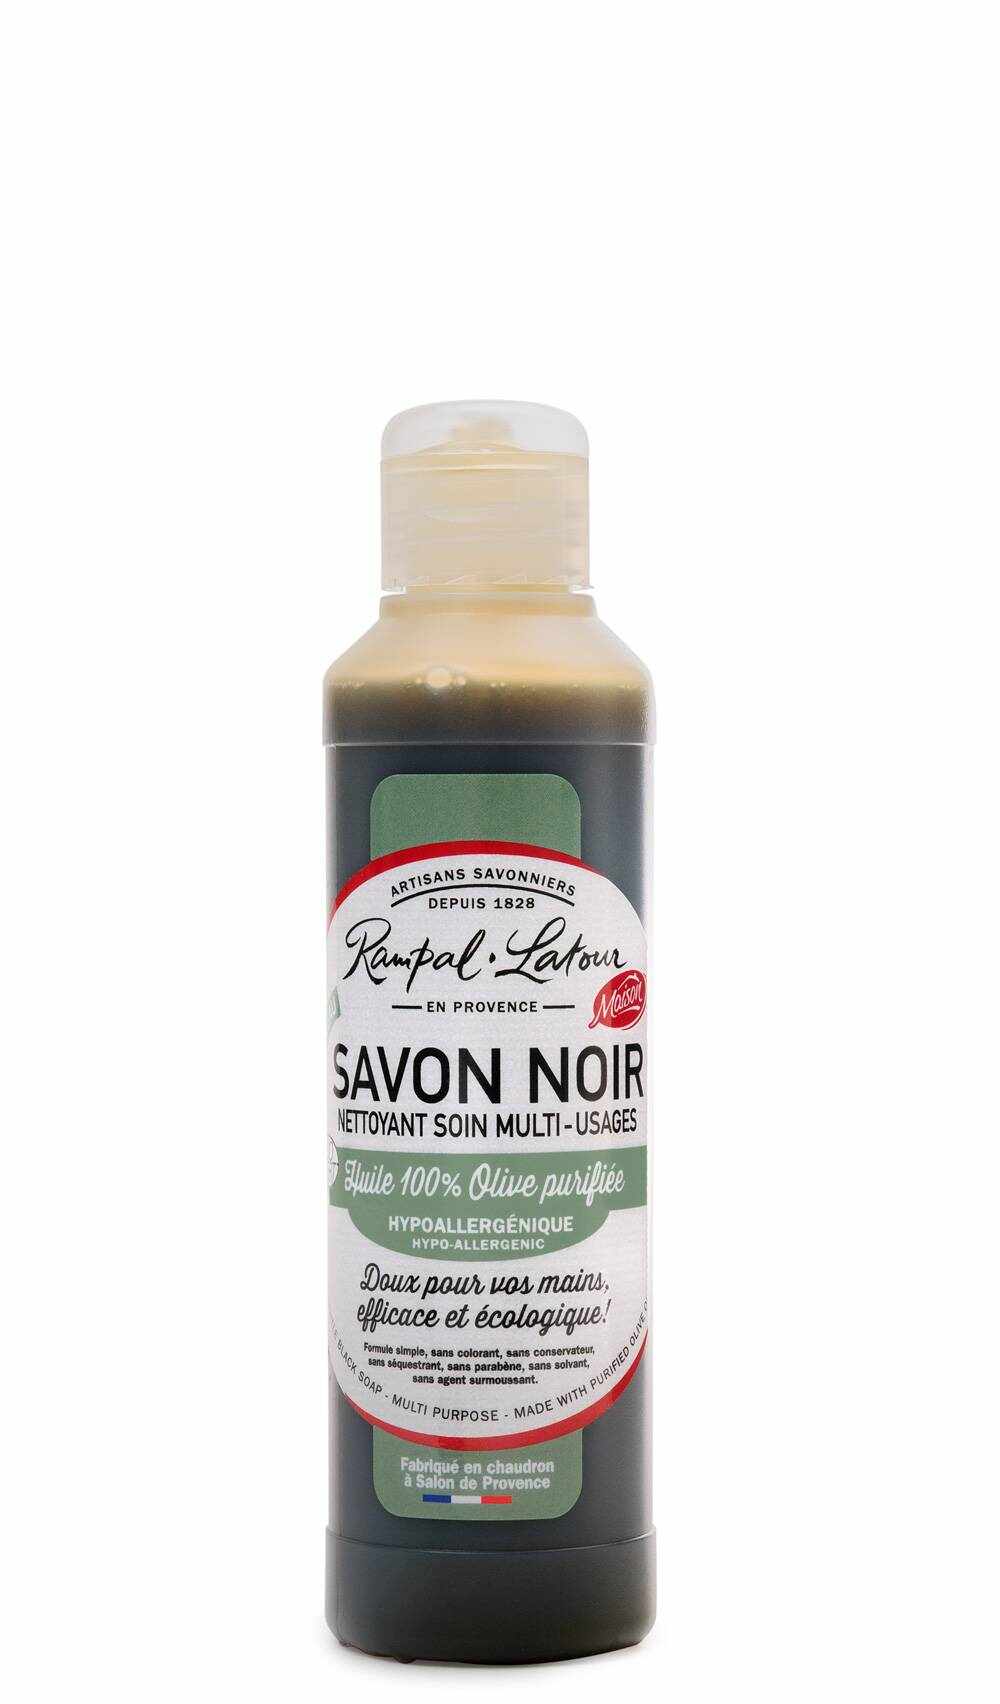 Savon Noir - Sapun negru hipoalergenic - concentrat natural toate suprafetele 250ml - Rampal Latour